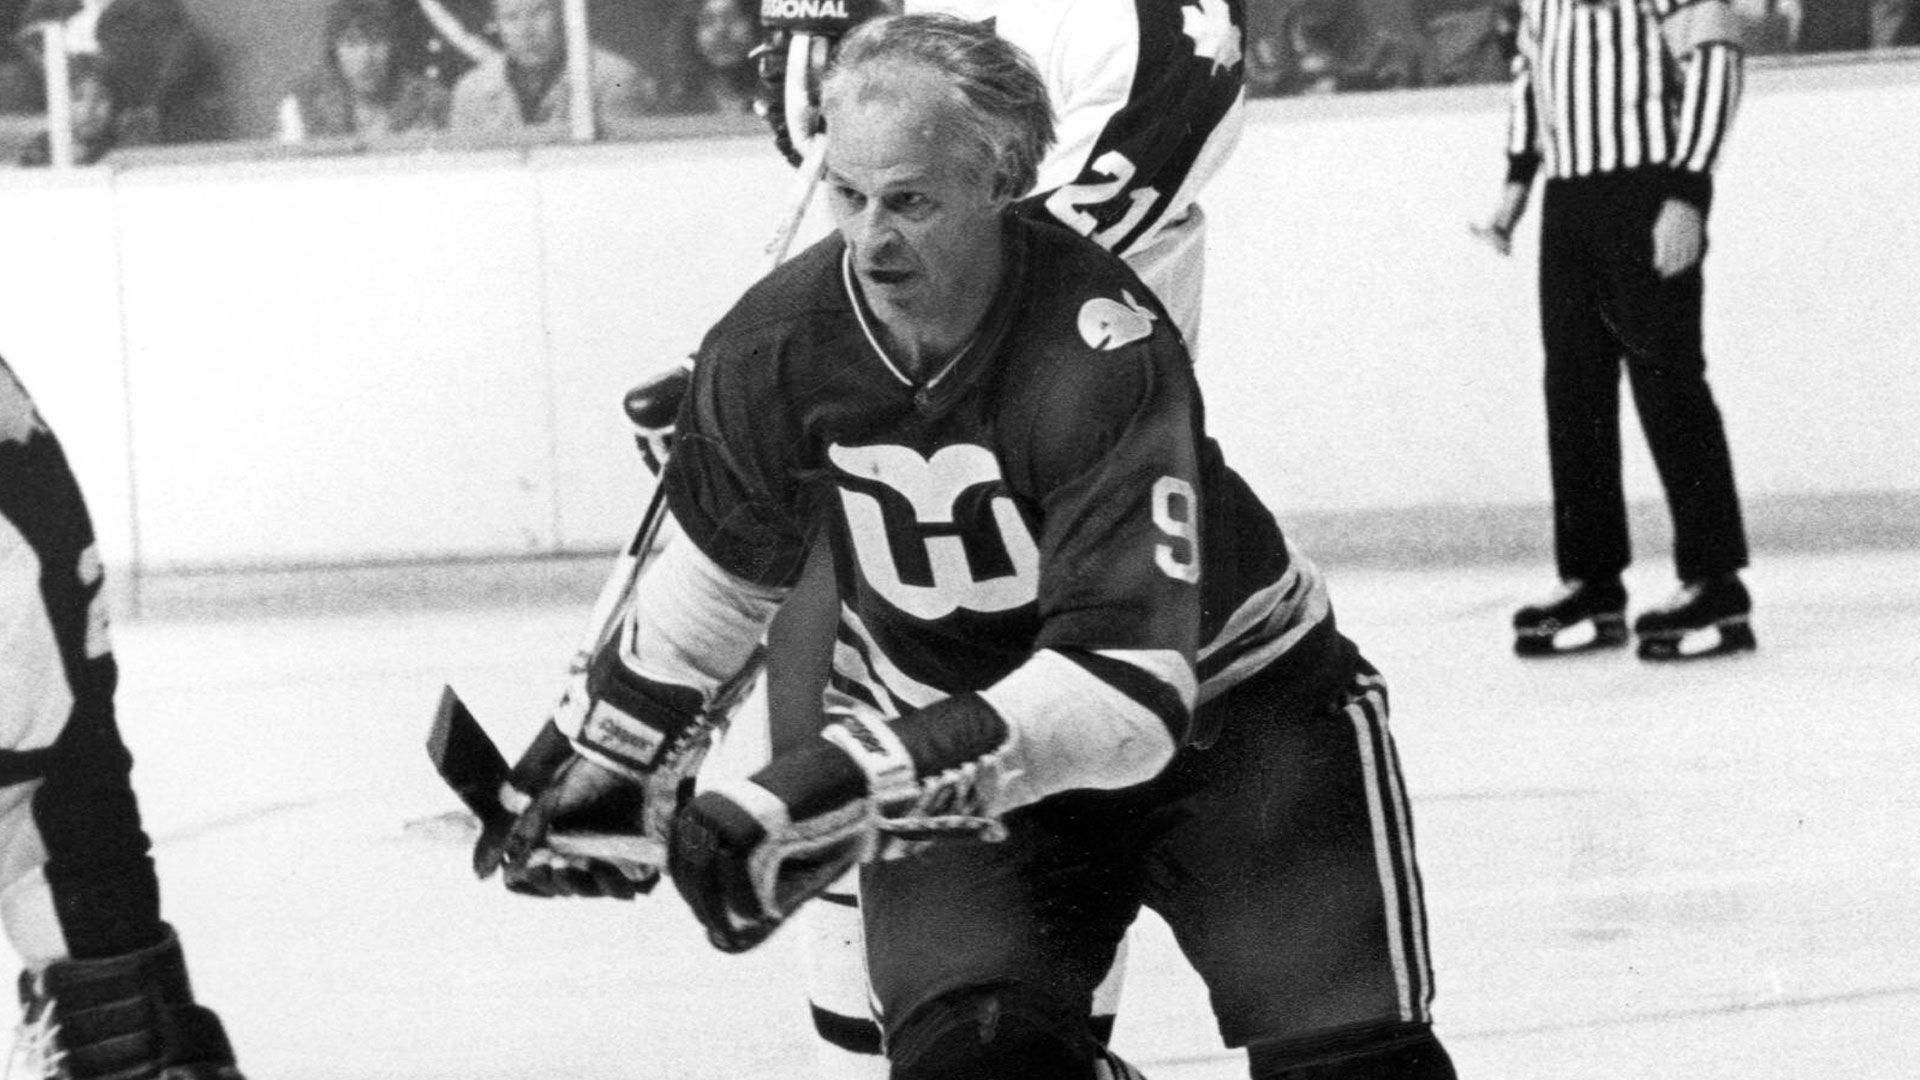 
                <strong>Gordie Howe: Der NHL-Oldie</strong><br>
                Der älteste Spieler, der je auf dem NHL-Eis stand, war Gordie Howe. Er beendete seine Laufbahn vorläufig nach der Saison 1970/71, doch neun Jahre später kehrte "Mr. Hockey" als Mitglied der "Hockey Hall of Fame" im Alter von 52 Jahren für seine 26. Saison (geteilter Rekord mit Chris Chelios) zurück in die NHL. Bei den Hartford Whalers spielte Howe mit seinen beiden Söhnen in einer Sturmreihe. Die Detroit-Red-Wings-Legende bestritt 1.767 Spiele in der besten Eishockeyliga der Welt und hielt damit zudem bis April 2021 den Rekord für die meisten NHL-Spiele. Diese Bestmarke, die fast 60 Jahre bestand, sicherte sich Patrick Marleau, der seine Karriere 2021 nach 1.779 NHL-Einsätzen beendete. 
              